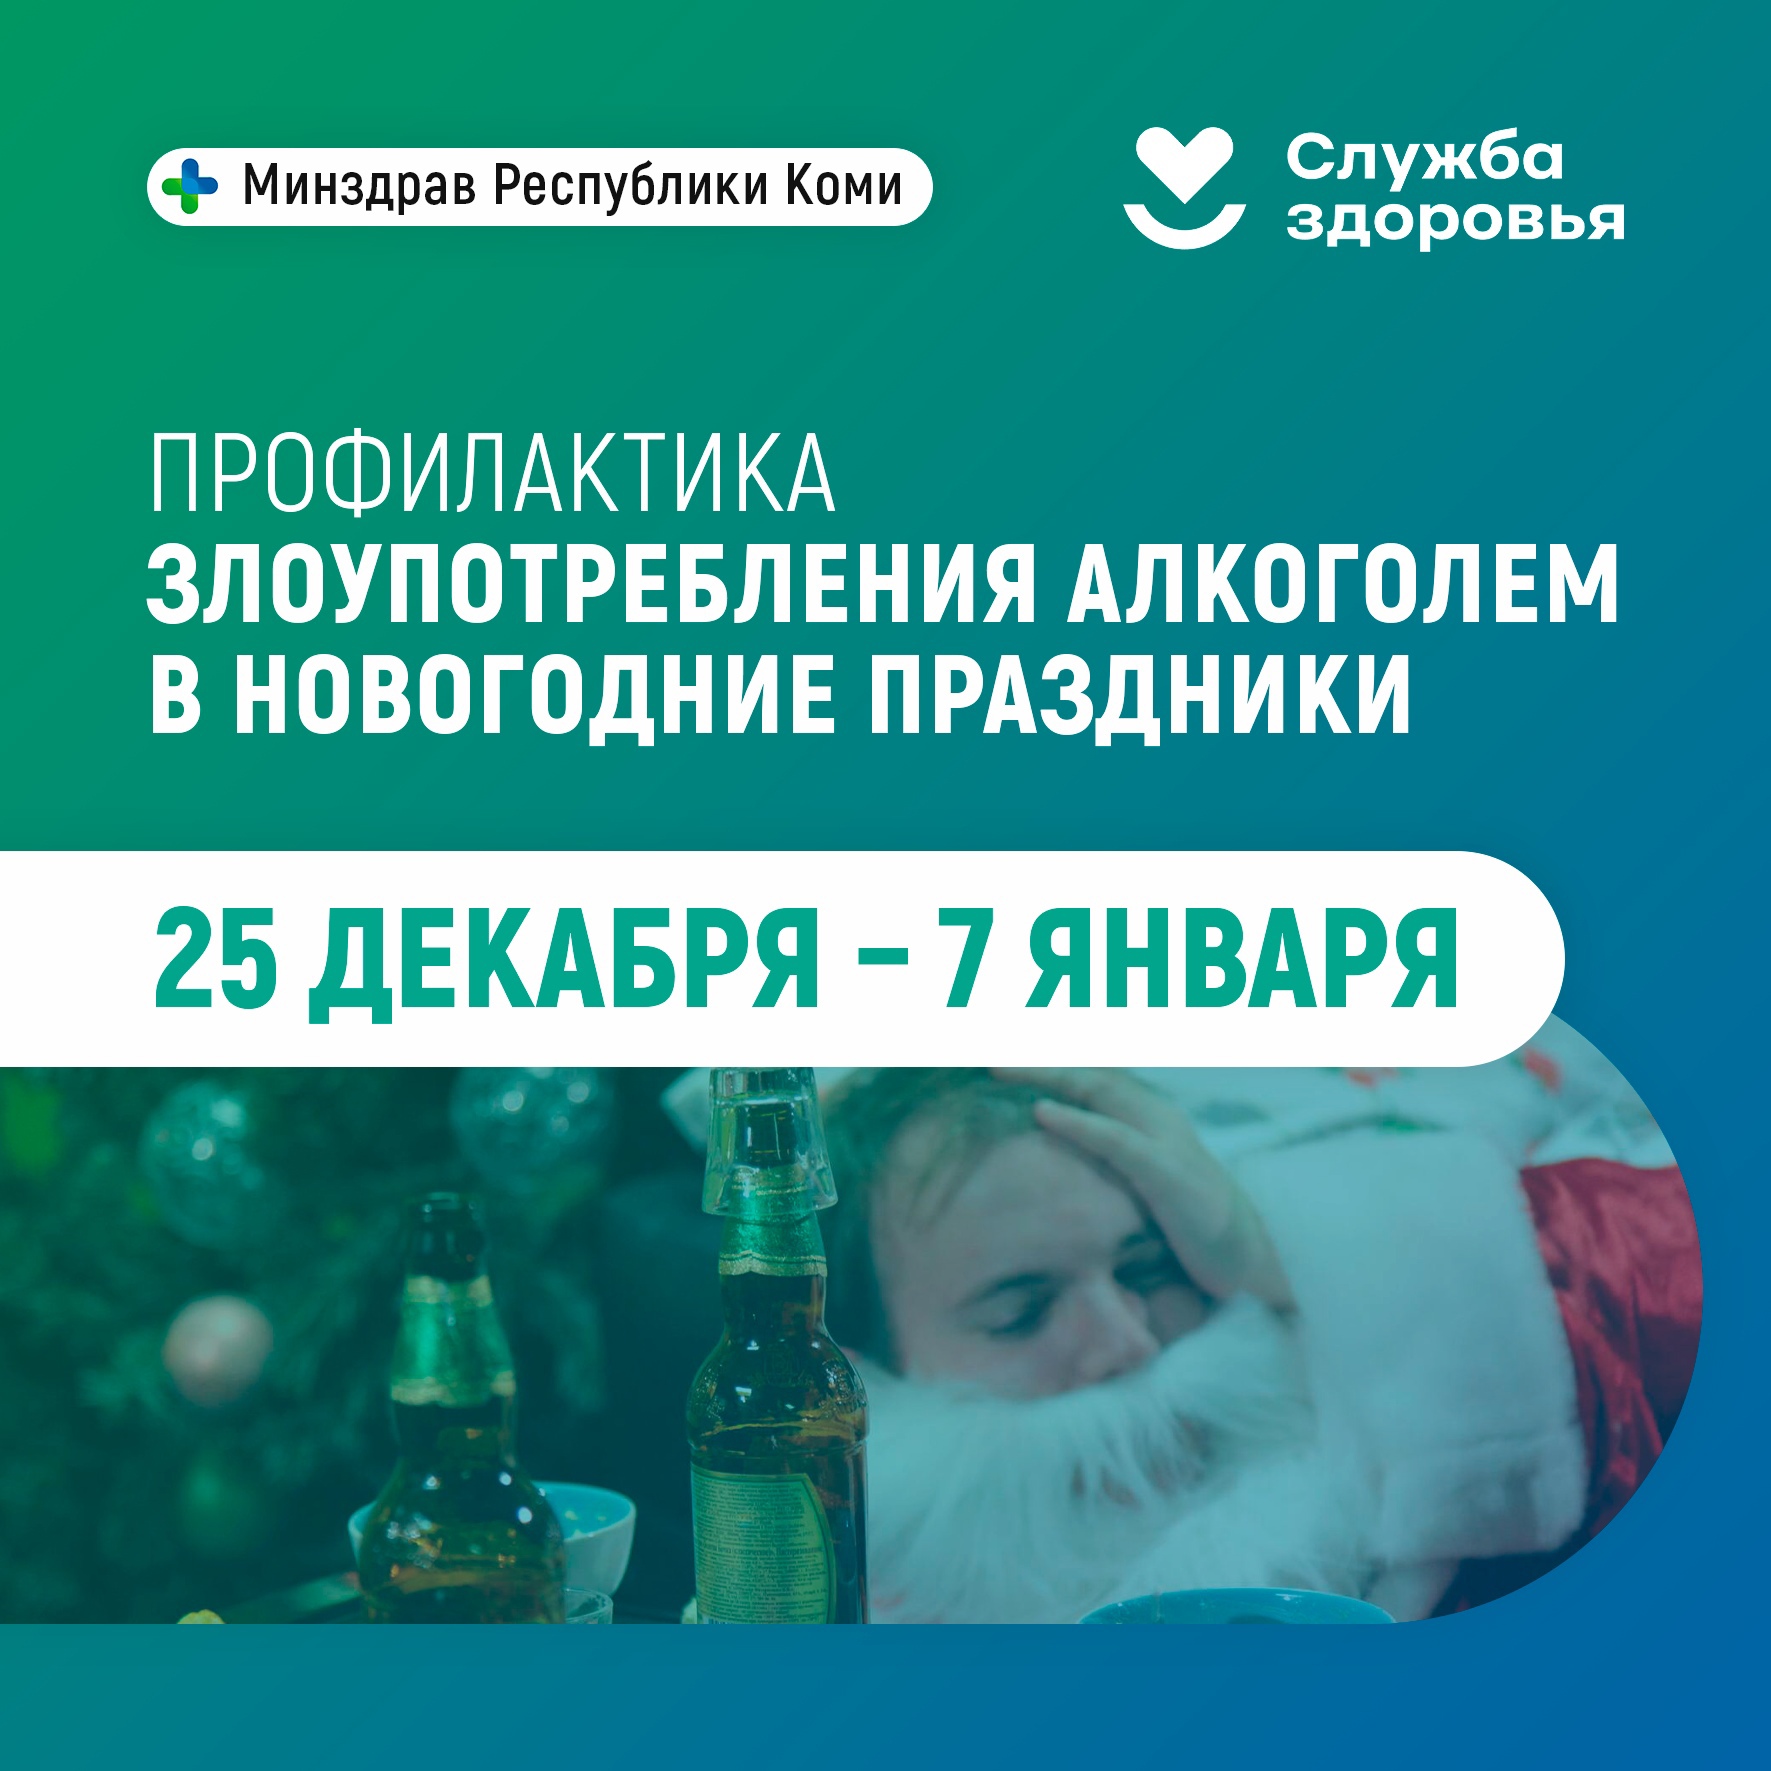 Неделя профилактики злоупотребления алкоголем в новогодние праздники.